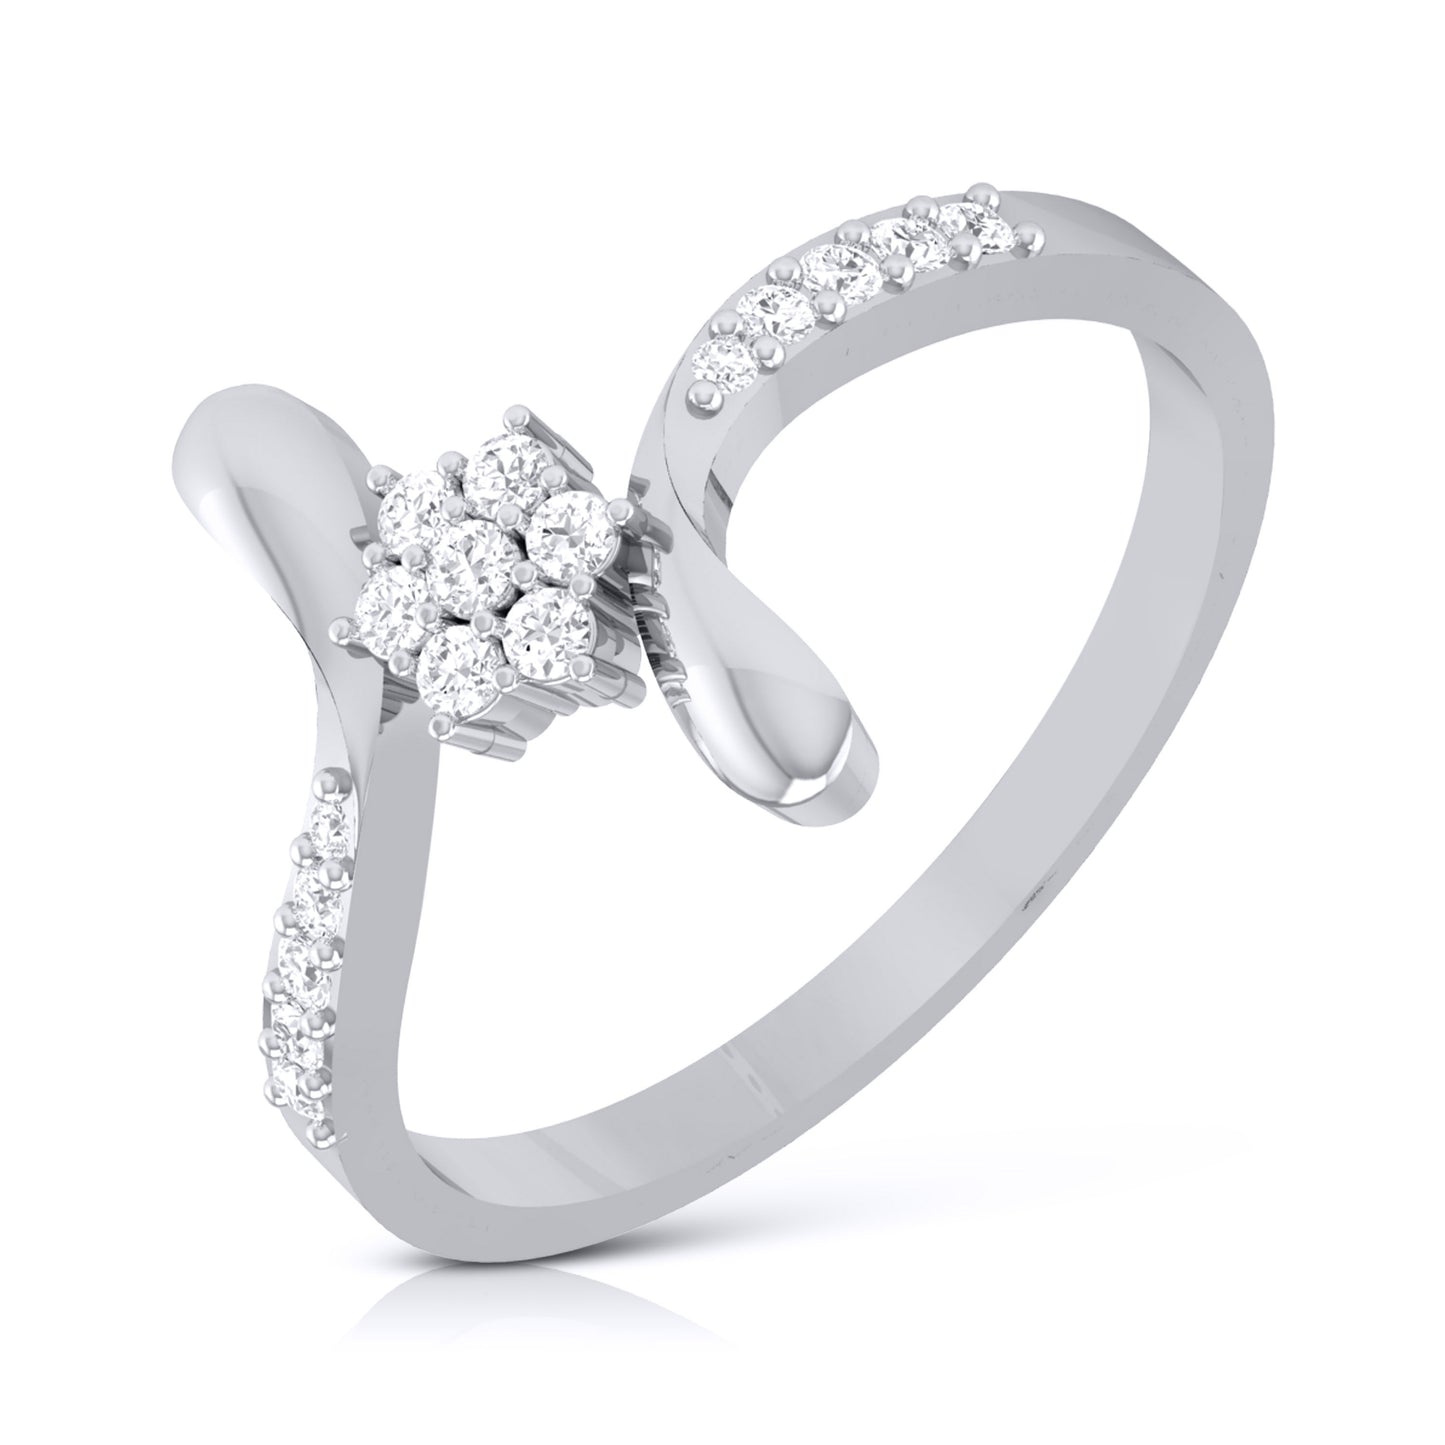 Designer Platinum Couple Rings with Diamonds JL PT 452 | Couple ring design,  Engagement rings couple, Wedding ring designs